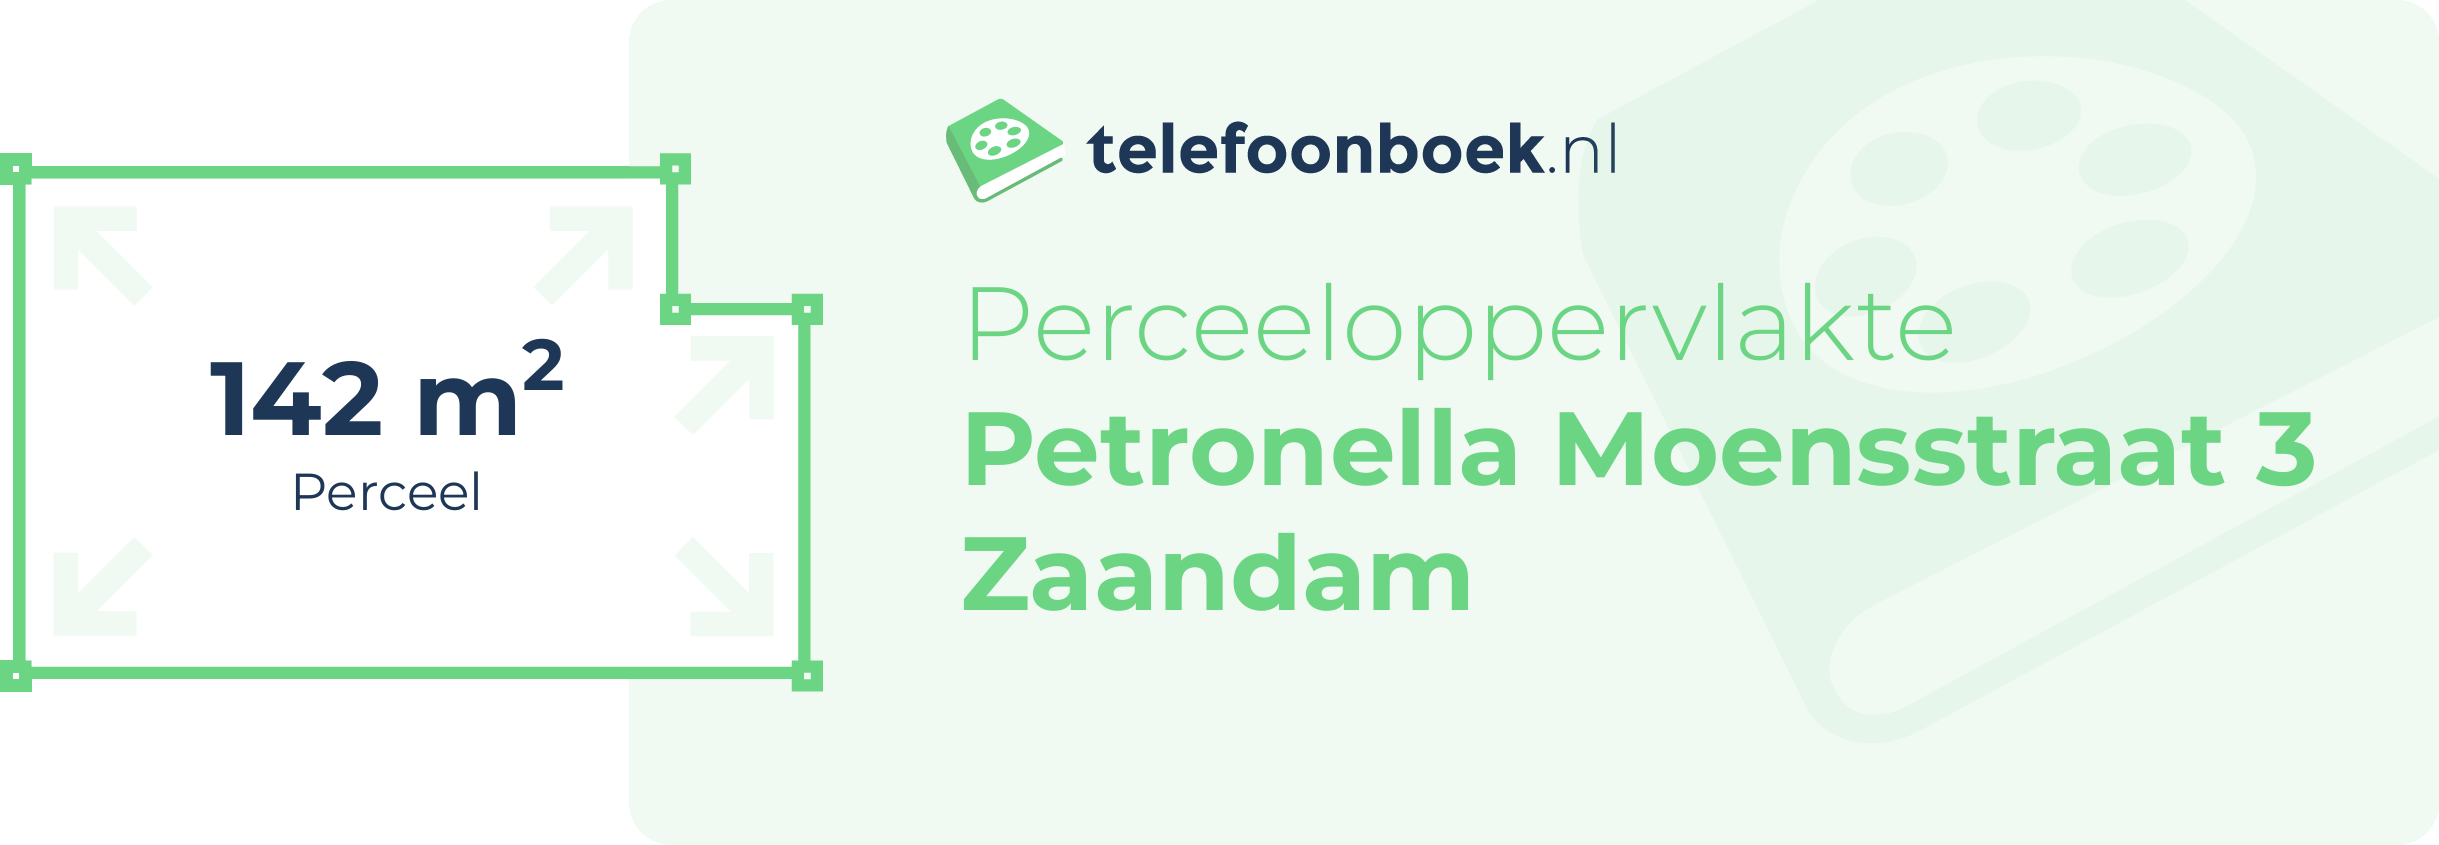 Perceeloppervlakte Petronella Moensstraat 3 Zaandam